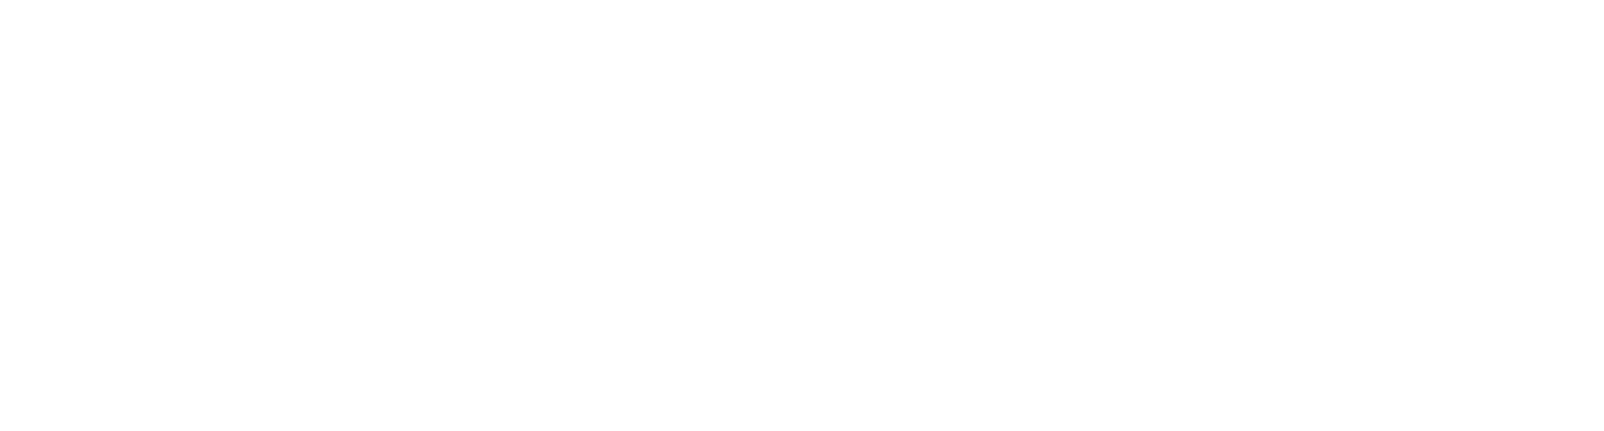 Crown Castle logo large for dark backgrounds (transparent PNG)